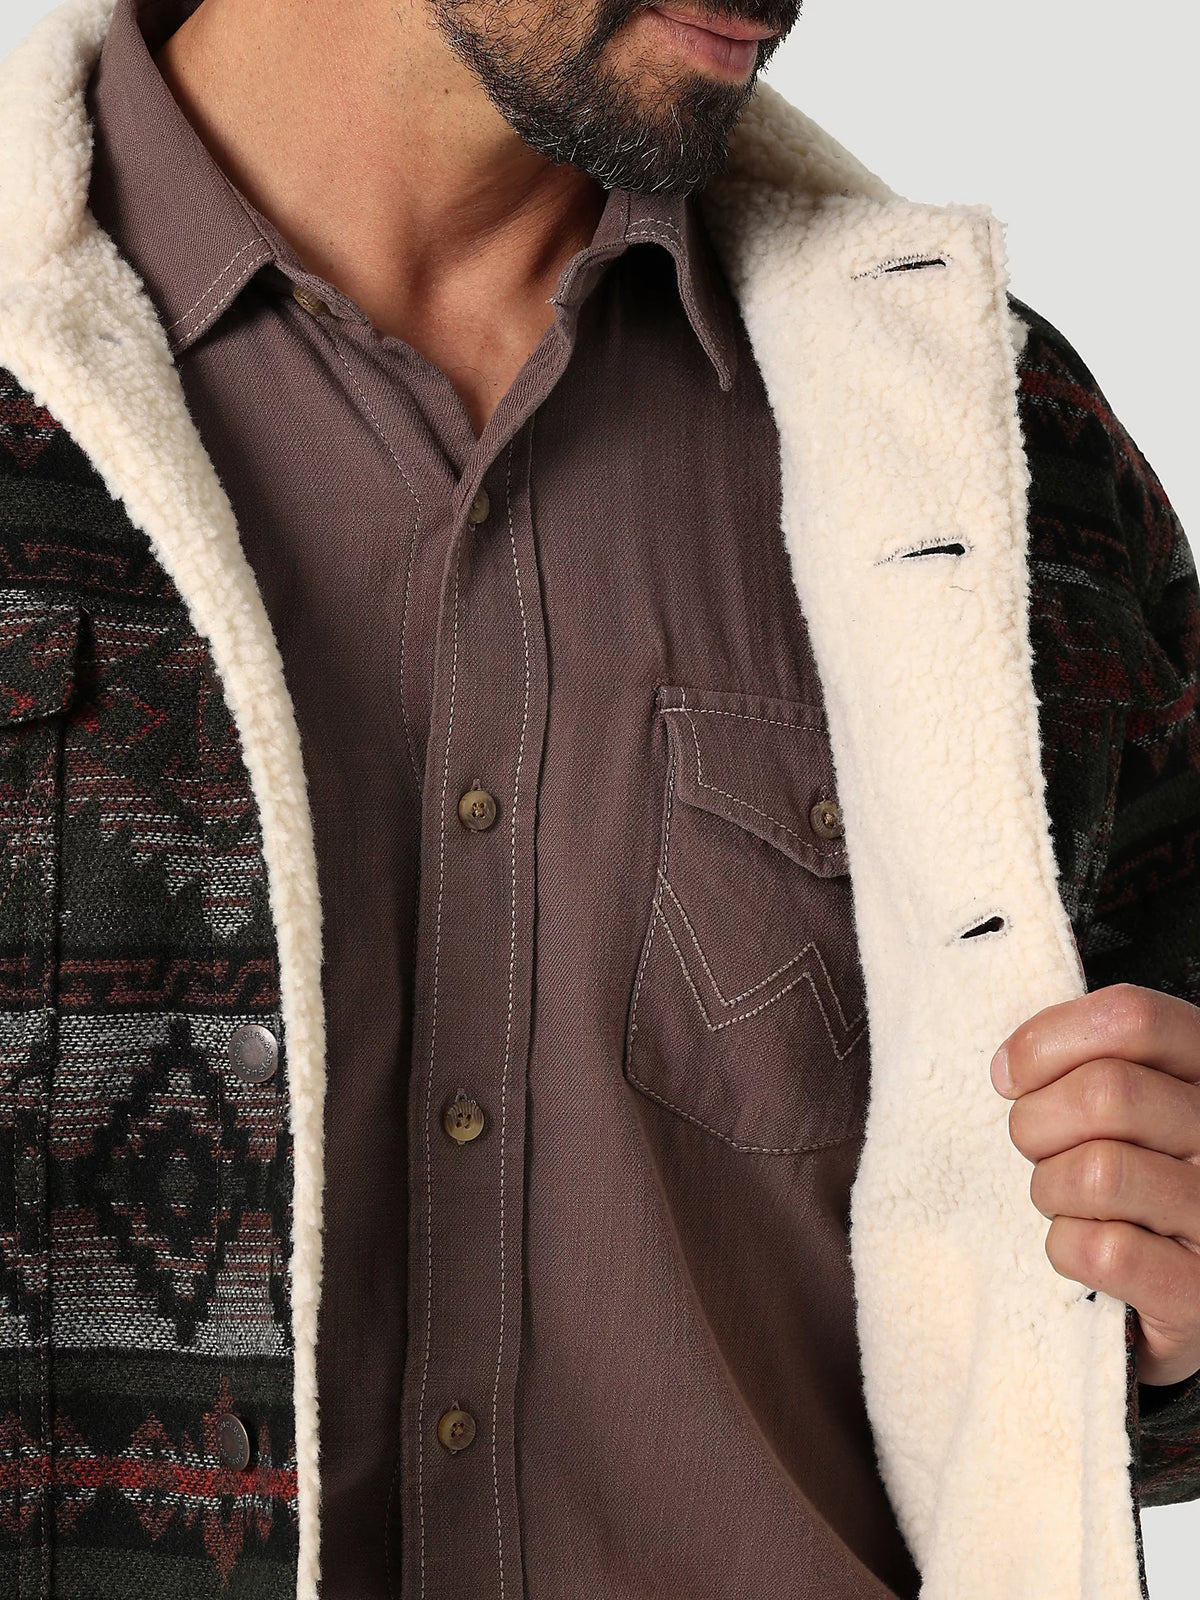 Wrangler Men's Sherpa Lined Jacquard Print Jacket in Olive